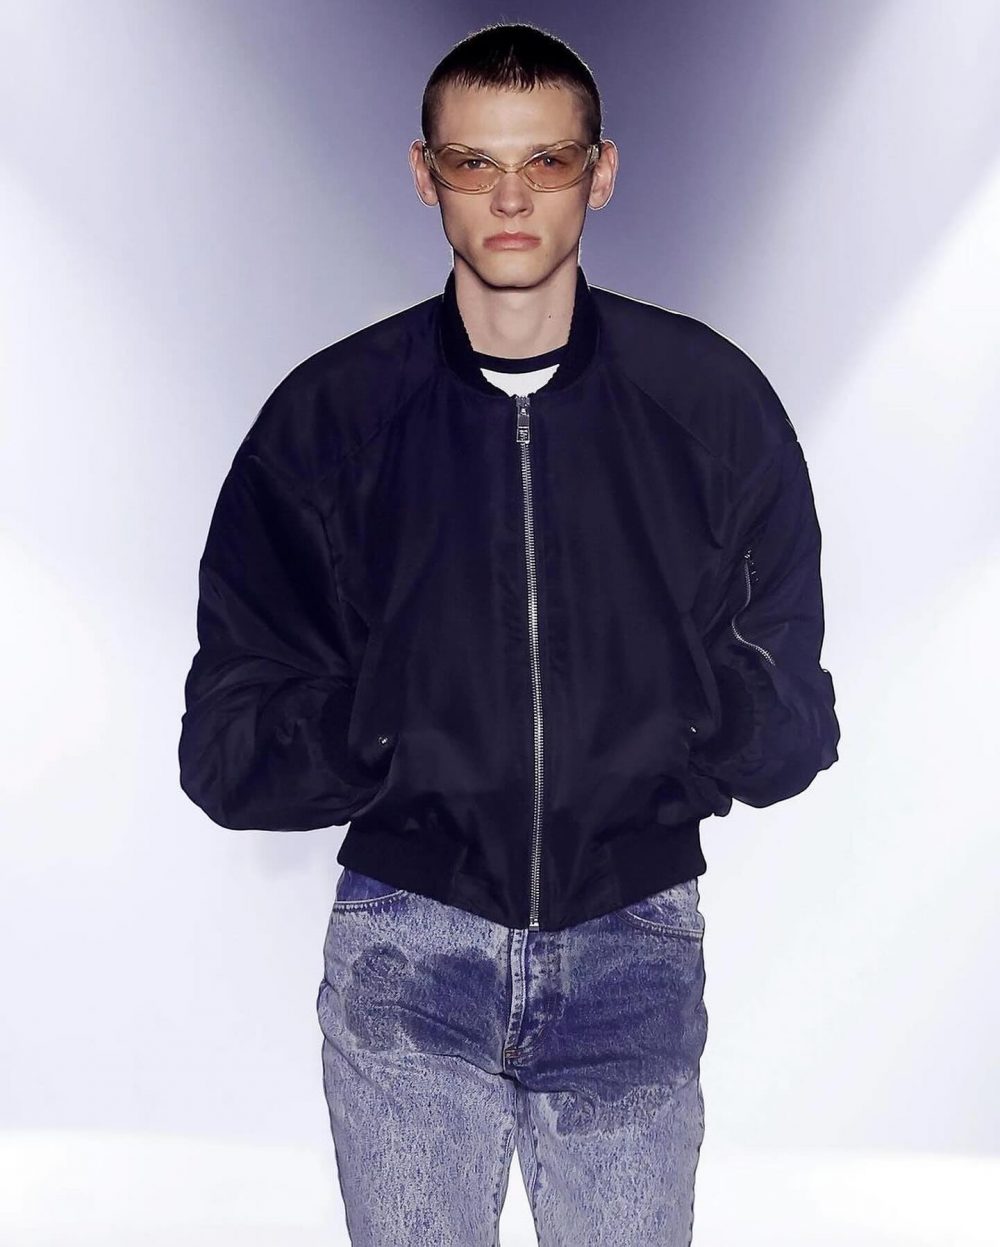 شلوار جین برند جوردنلوکا با طرح ادرار به قیمت ۸۰۰ دلار